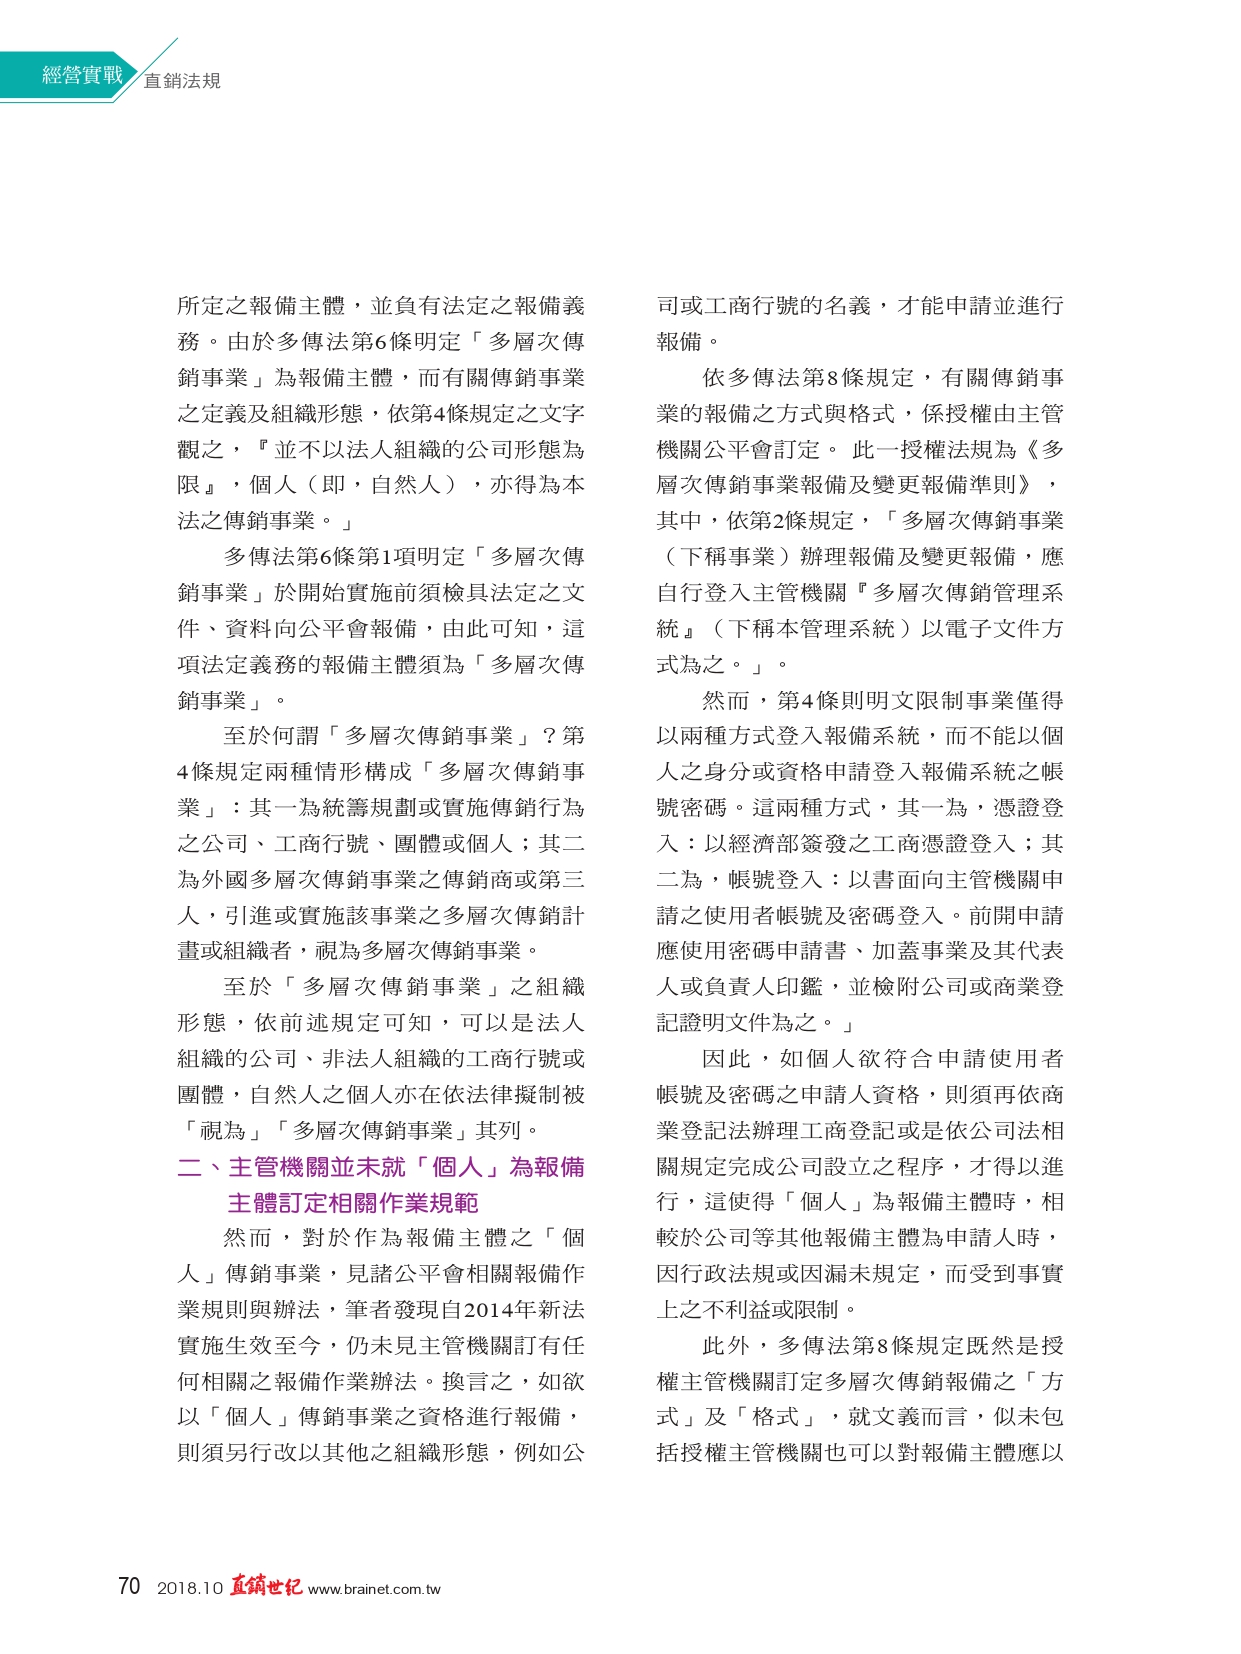 吳律師310_page-0003